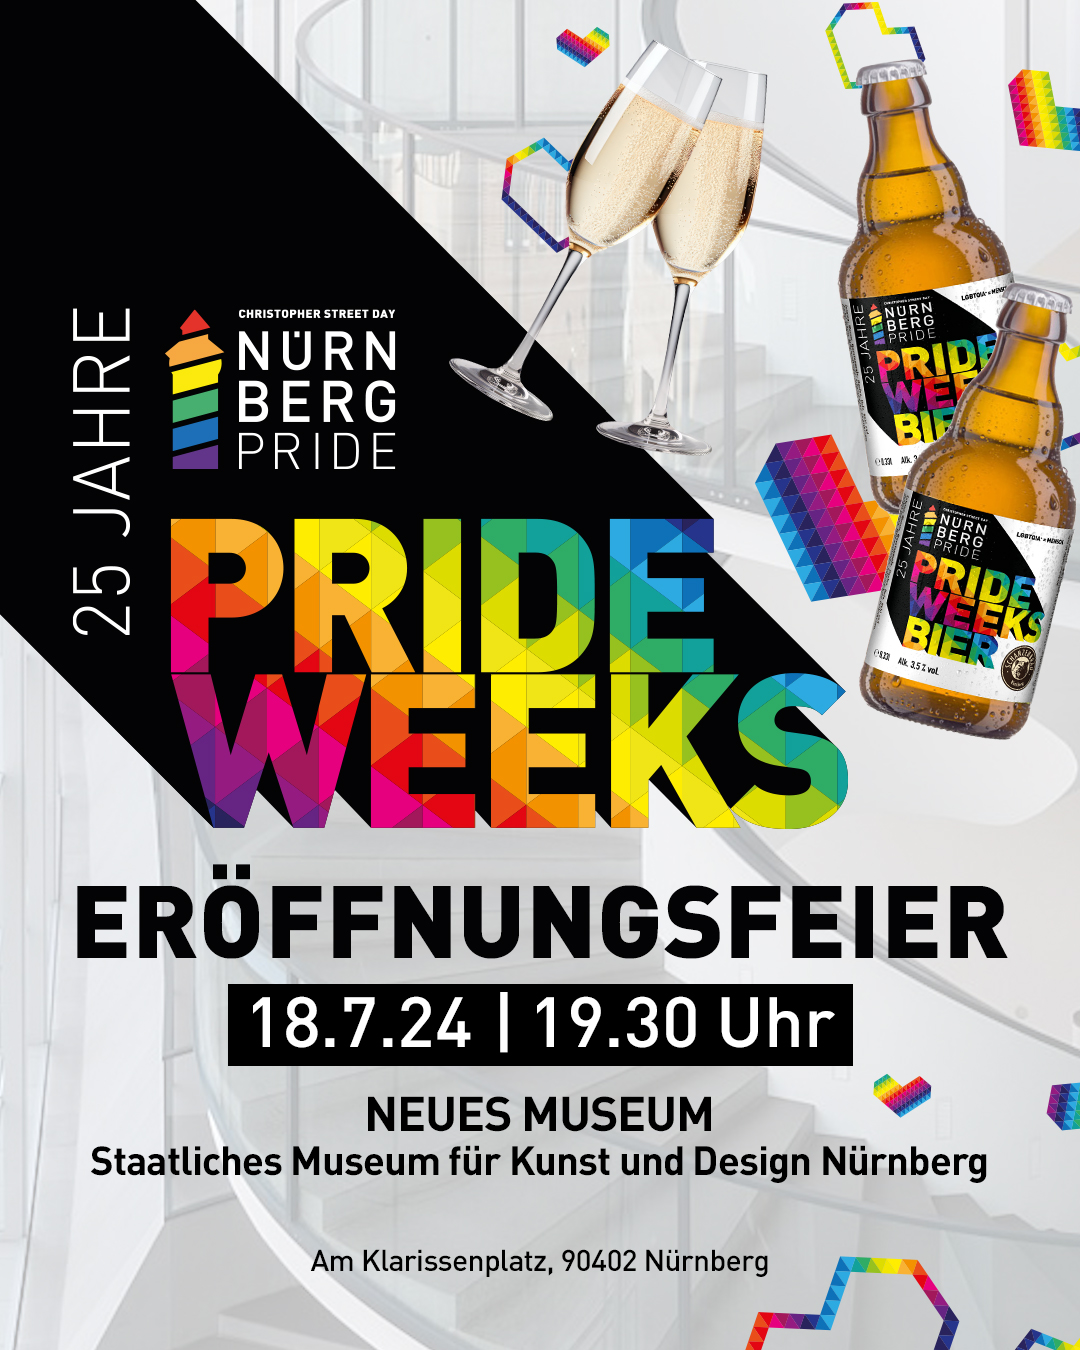 Eröffnungsfeier der Prideweeks – CSD NÜRNBERG PRIDE